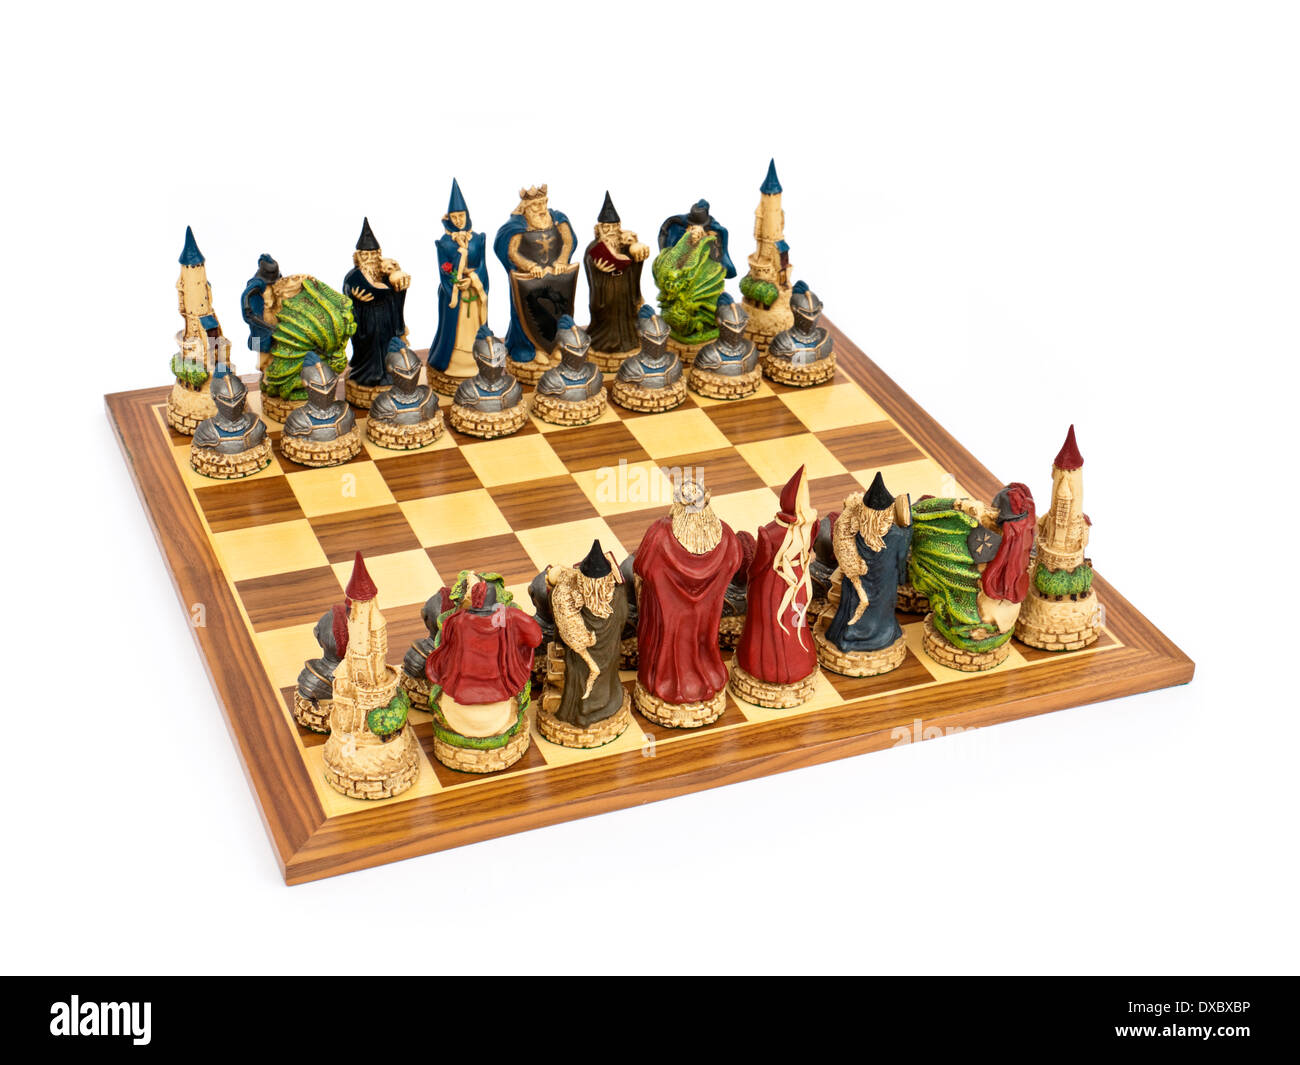 Lujo en 'King Arthur' temáticas establecidas por conocedor de juegos de ajedrez Fotografía de - Alamy